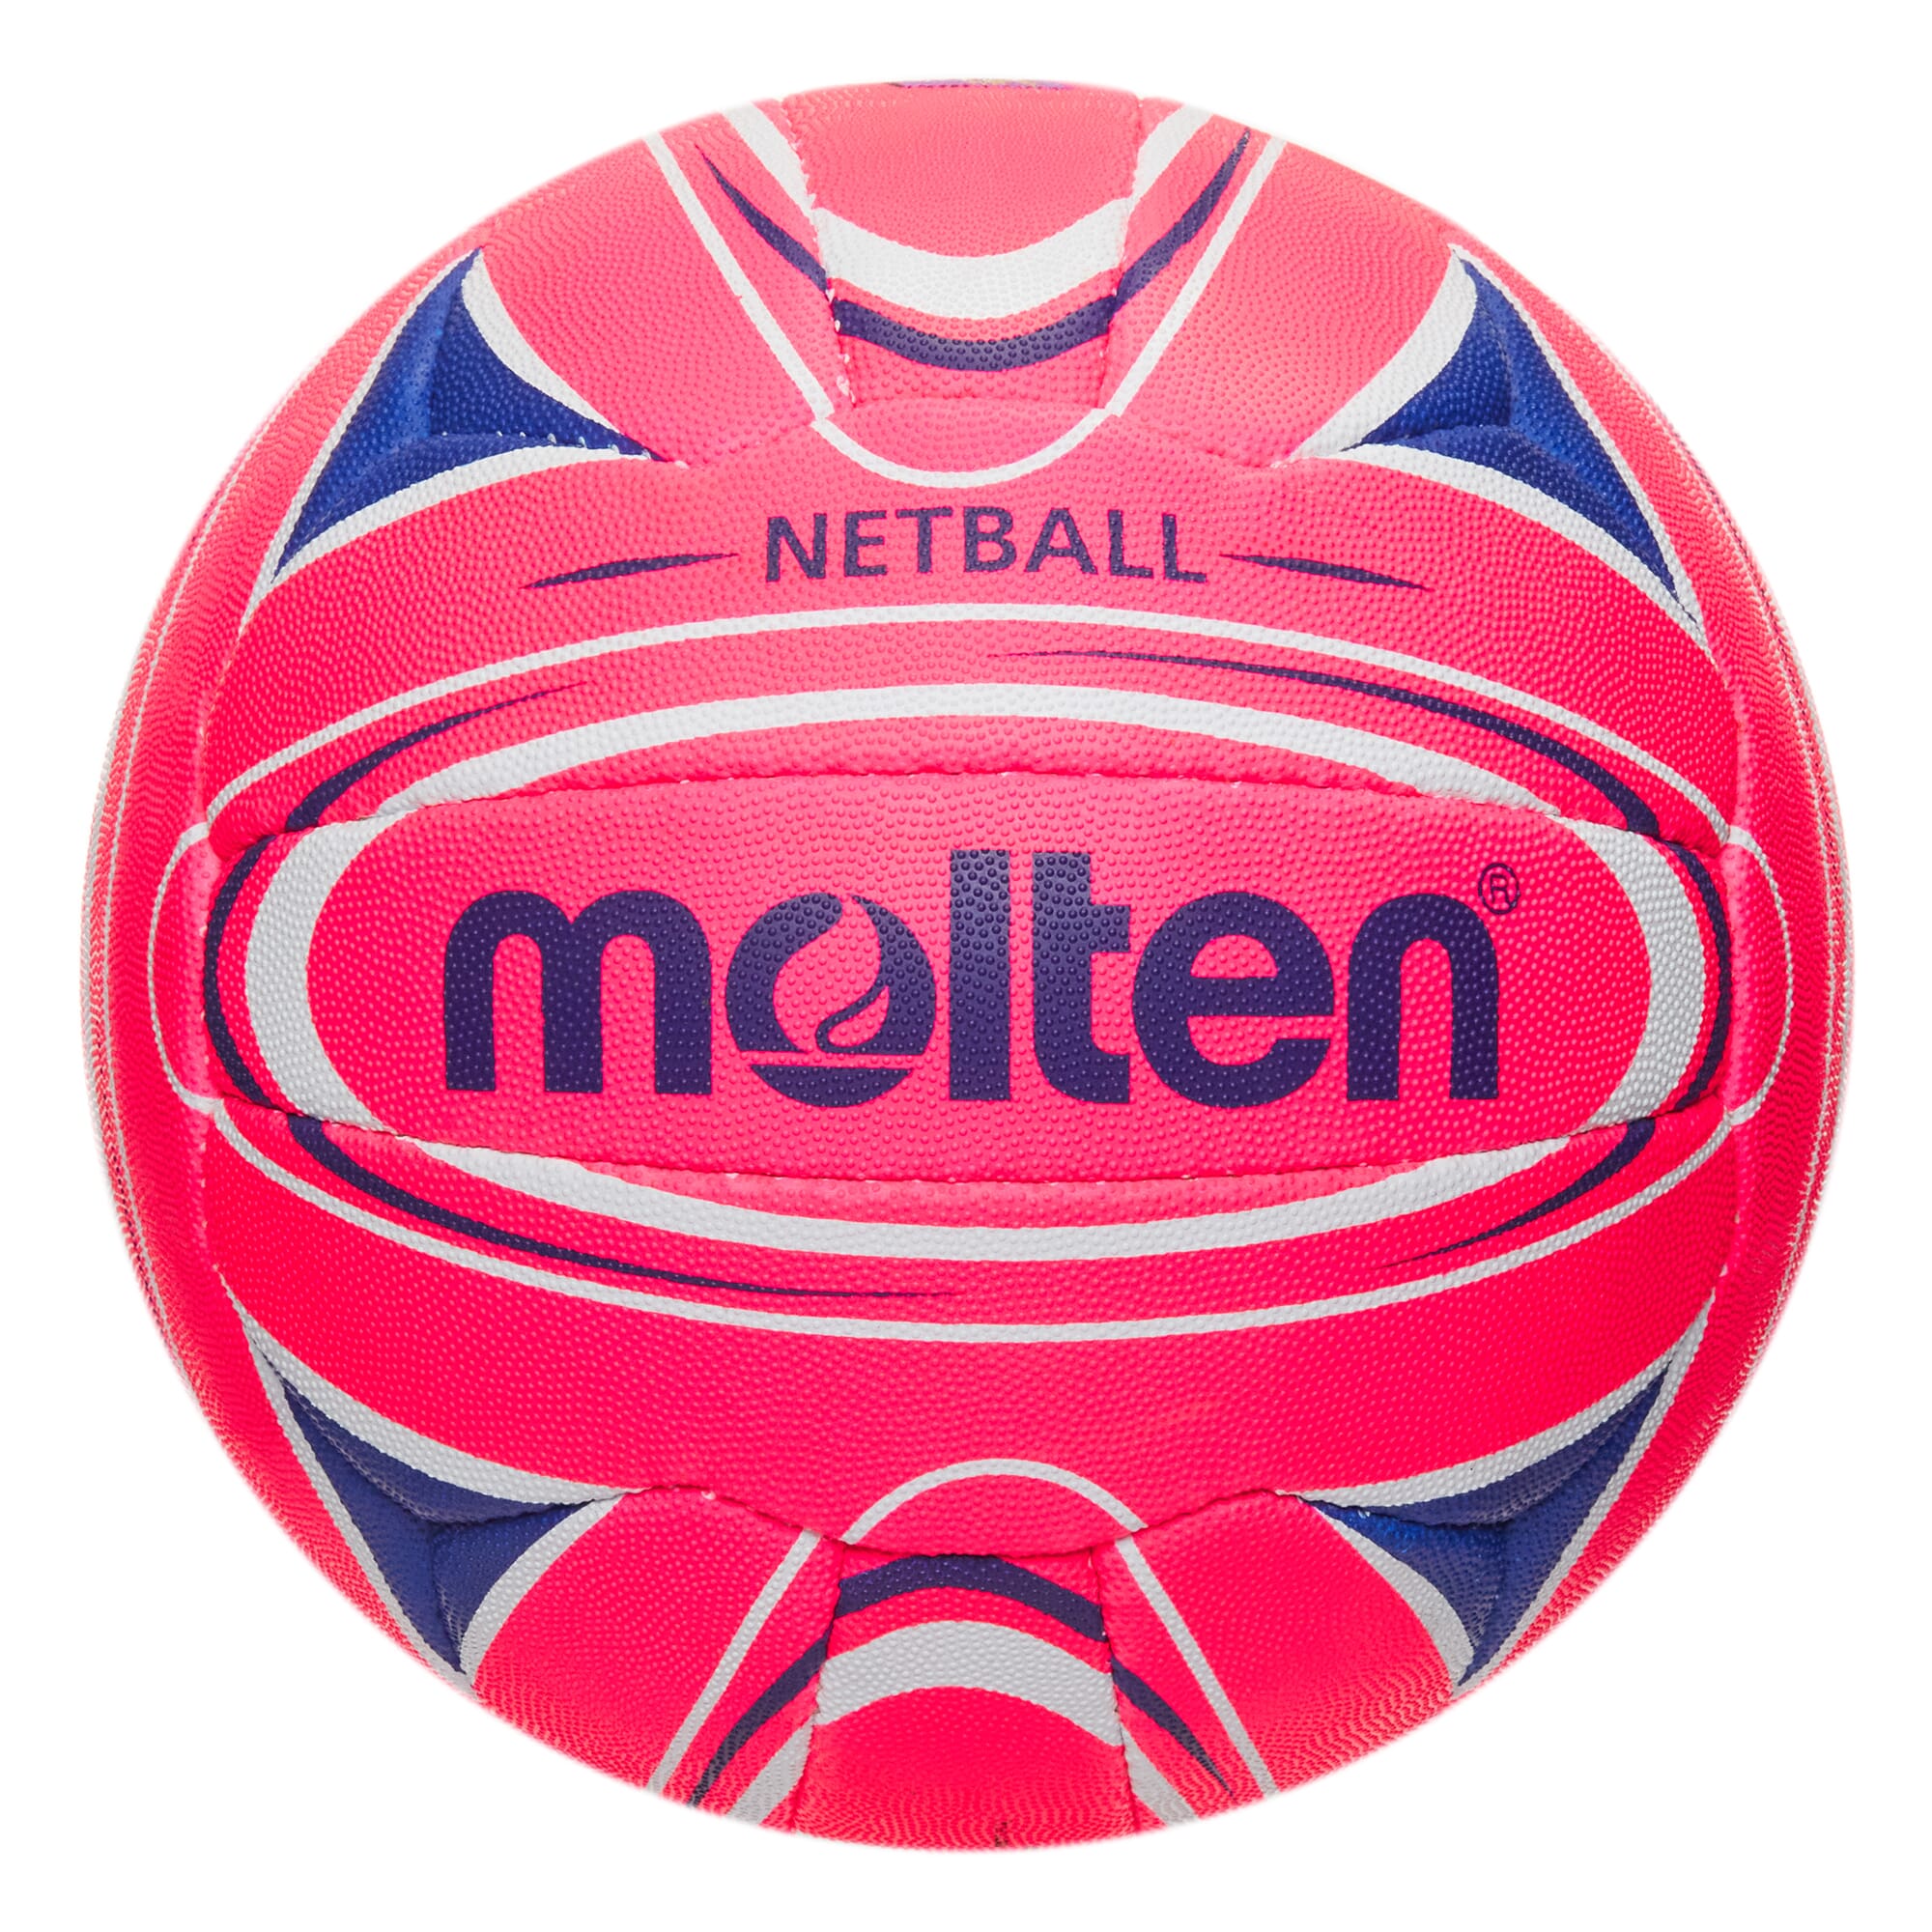 Molten N5C3000-PB/AS All Star Fast 5 International Match Grip Netball Size 5 